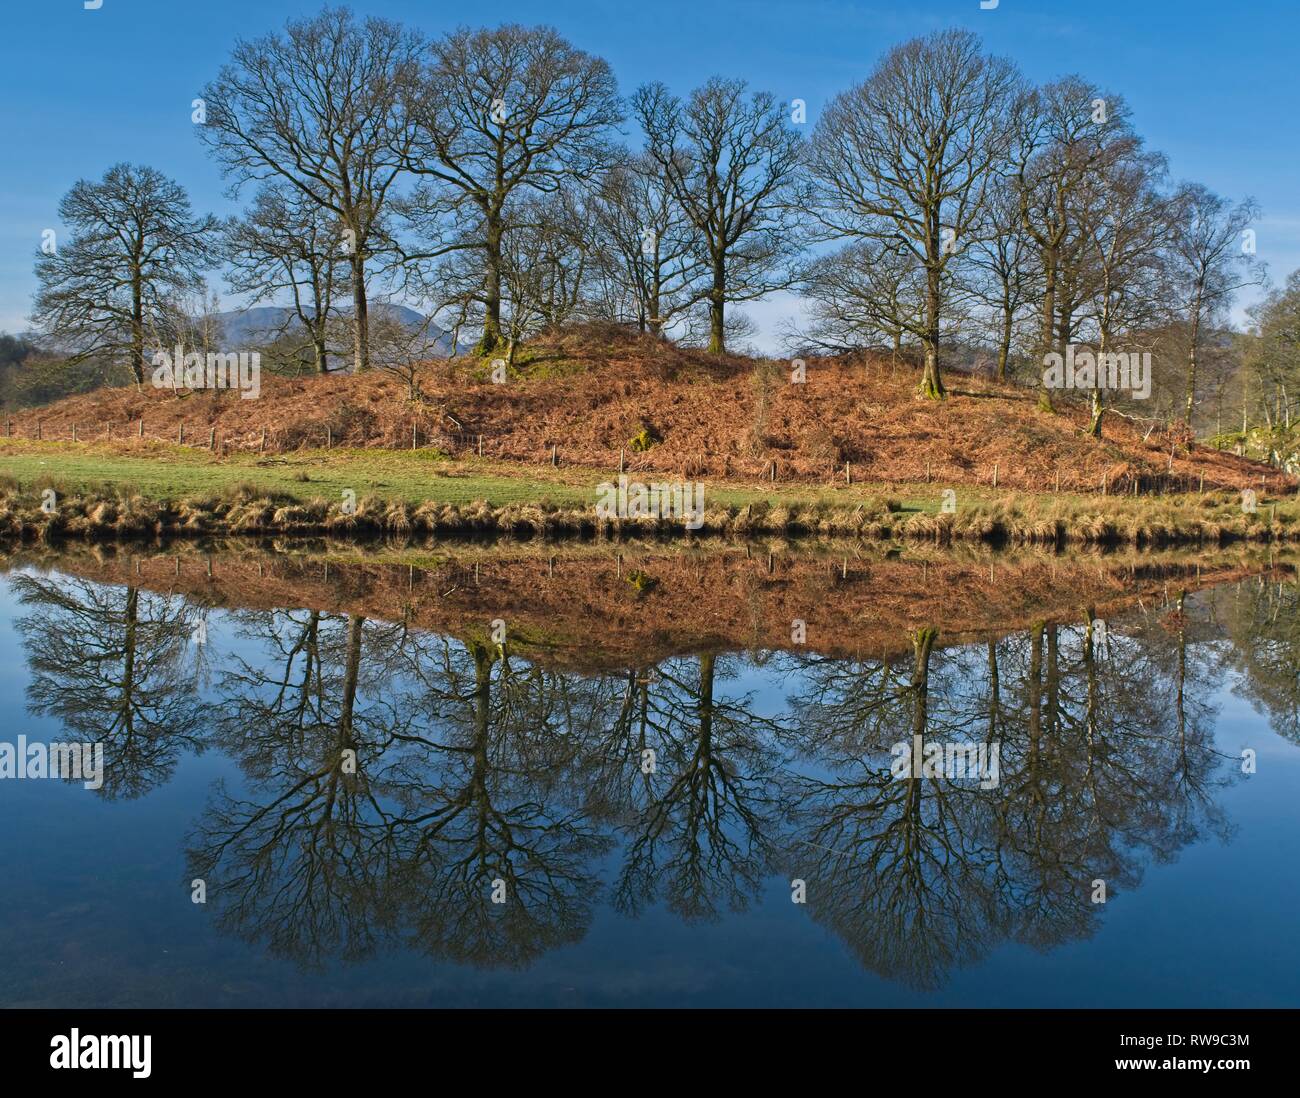 Damm der Bäume perfekt in einer ruhigen Fluss Brathay in der Nähe von Elterwater wider Stockfoto